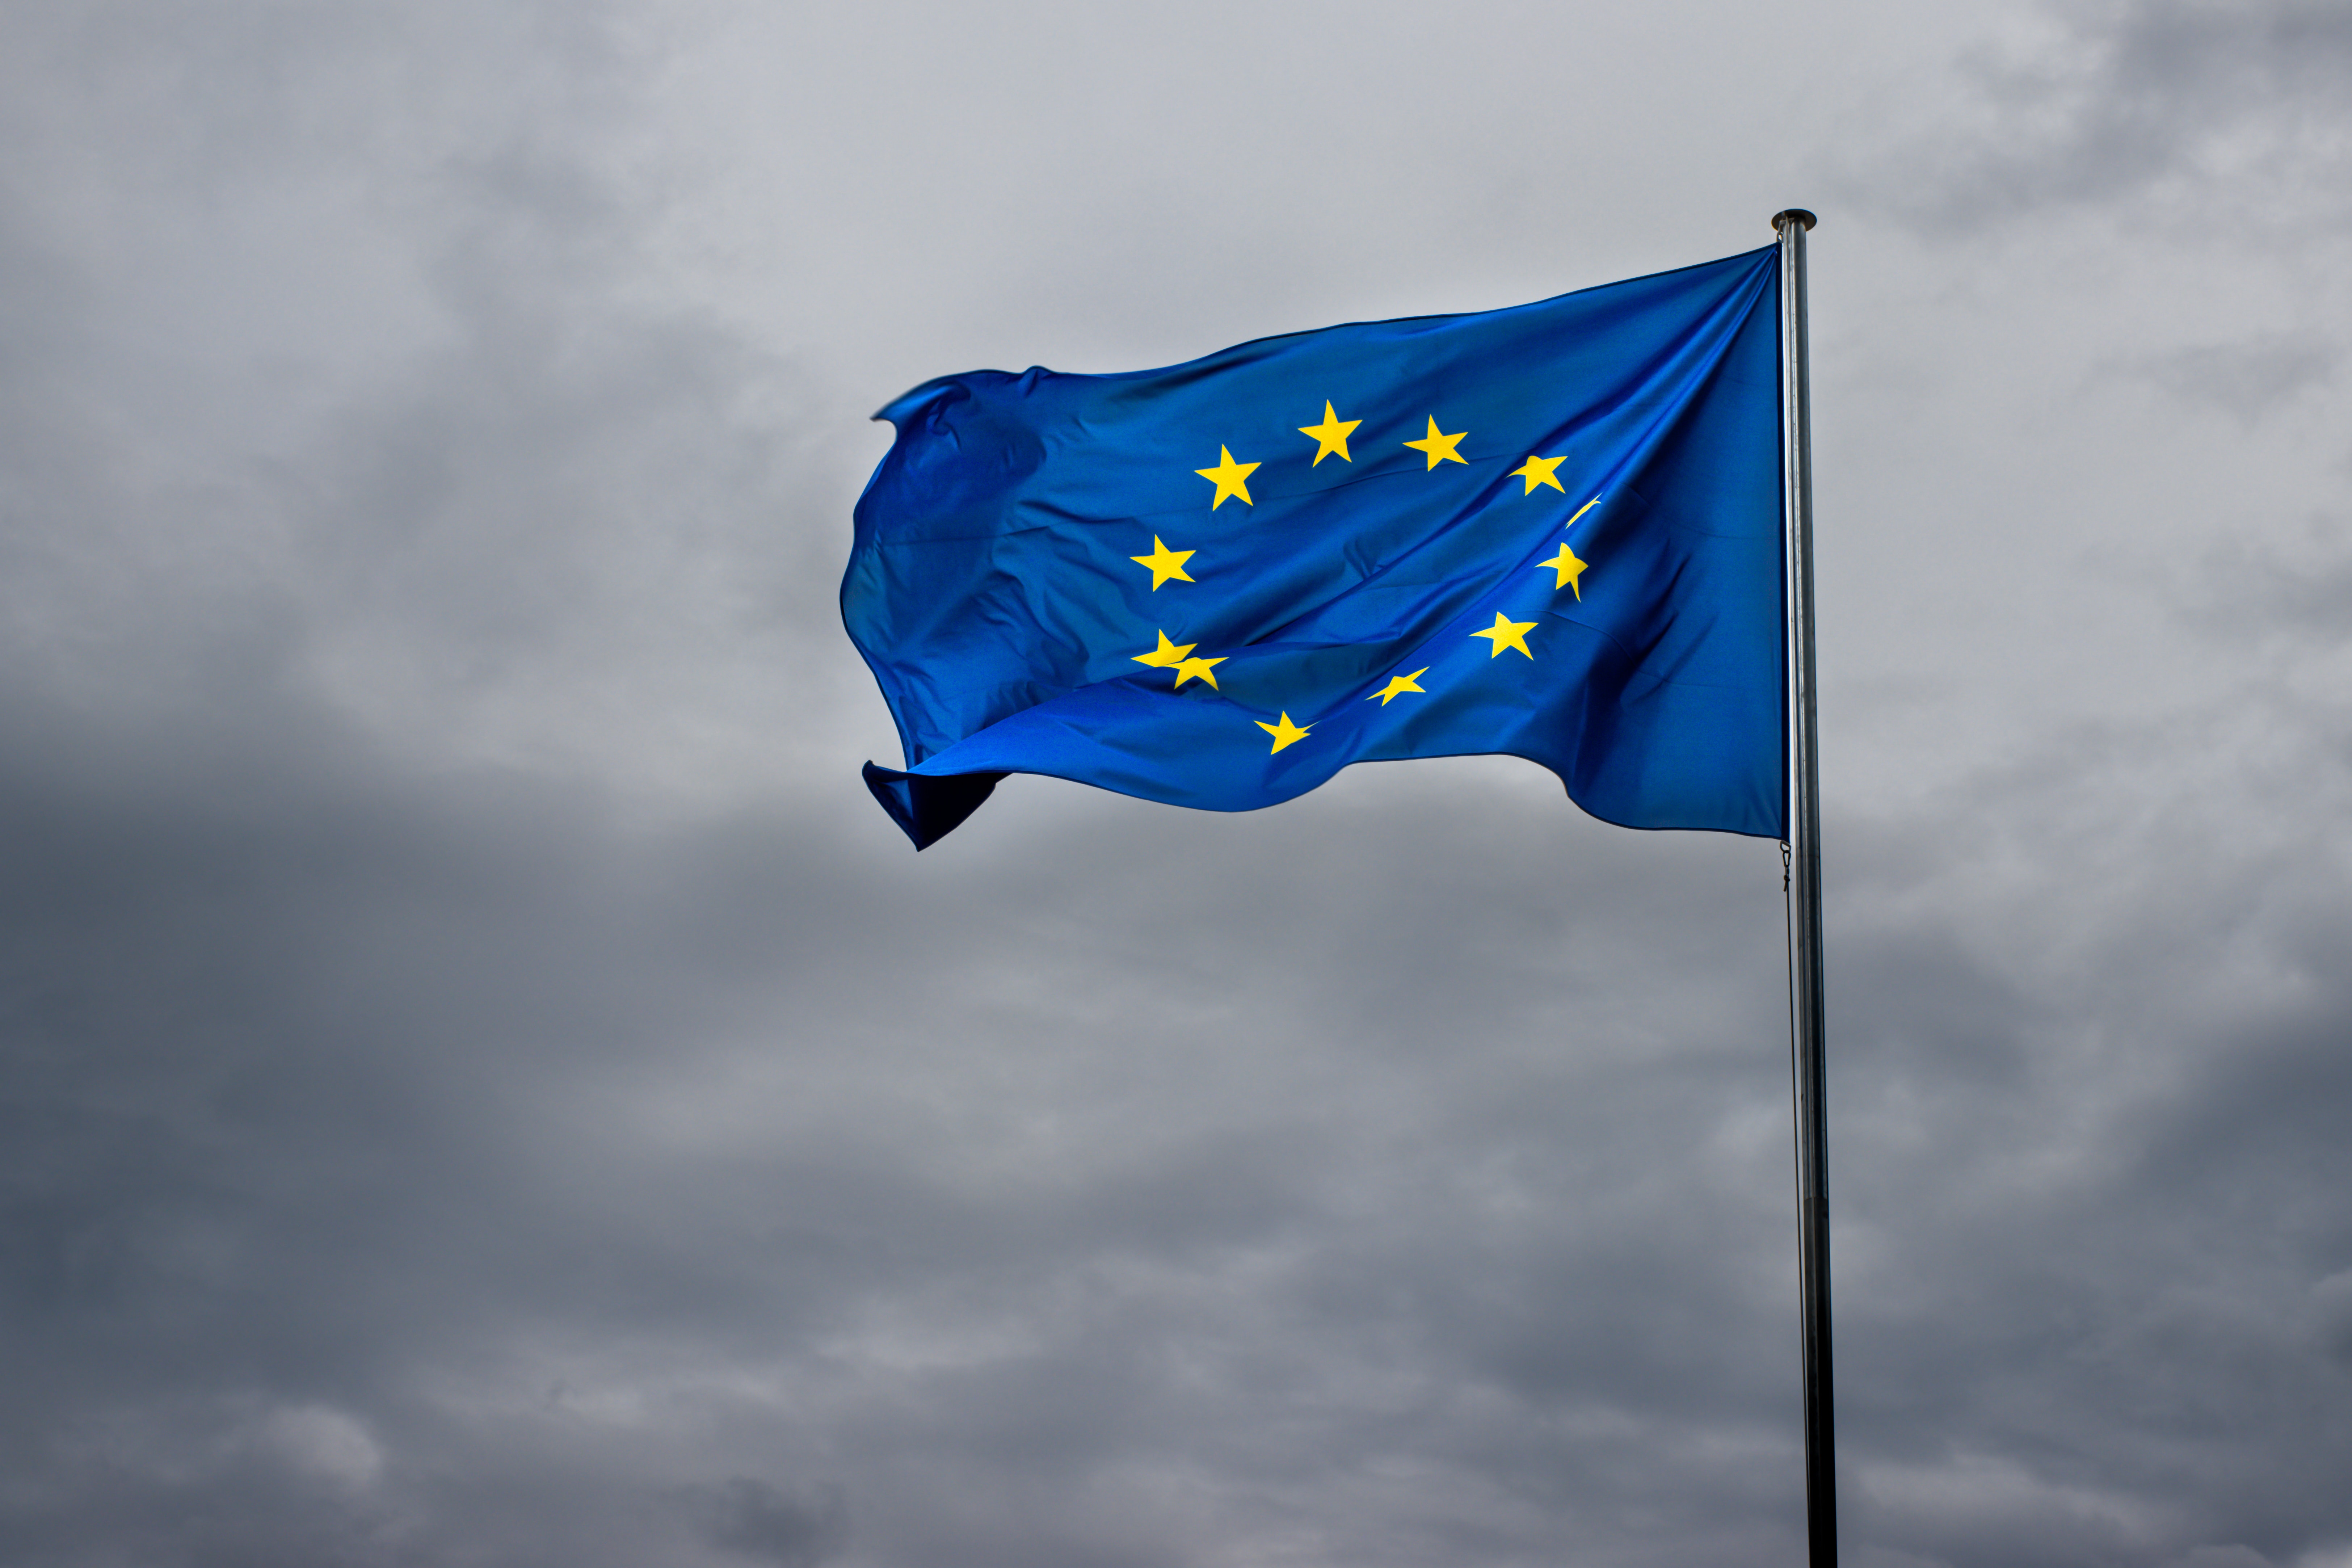 Elite EU diplomat cautions outsiders entry could ‘dissolve’ bloc